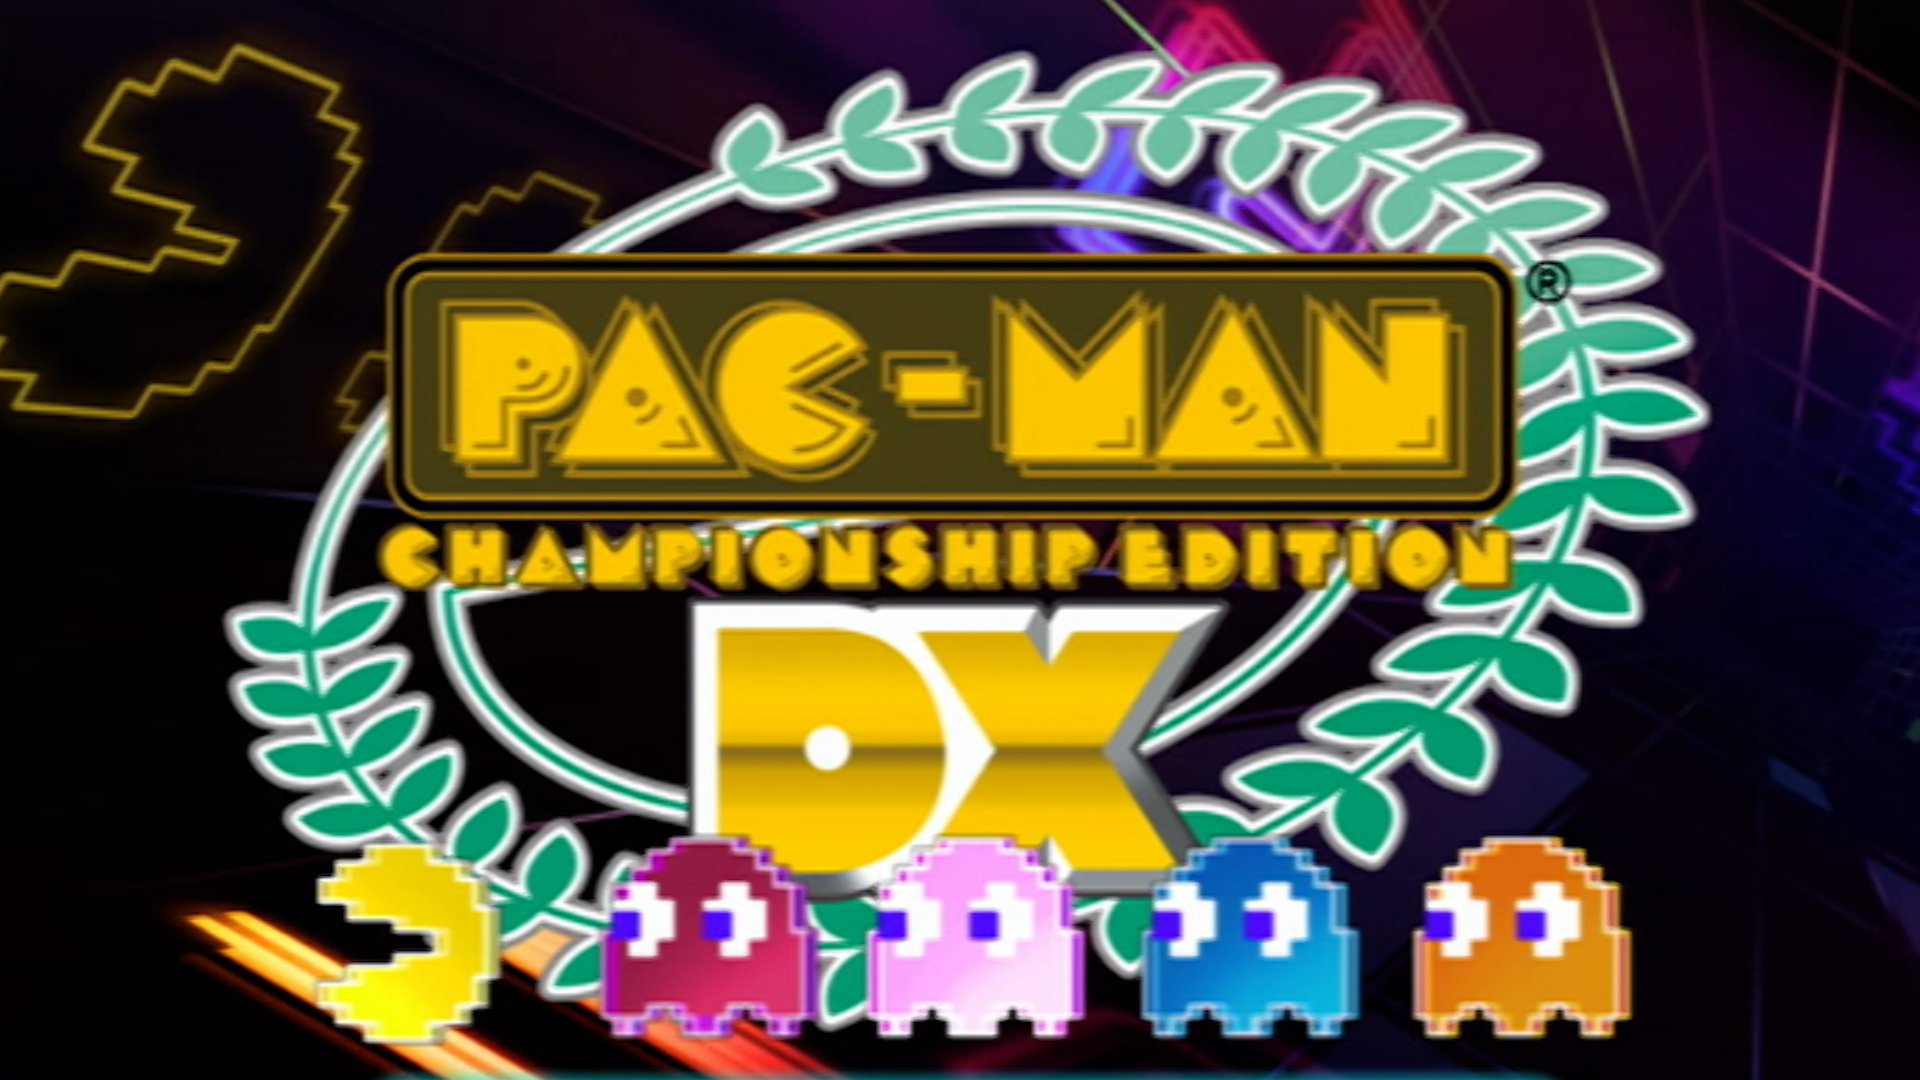 Pac man championship. Pac-man Championship Edition ps3. Pac-man Championship Edition DX. Pac man Championship Edition DX PC. Pacmania Championship Edition DX+.